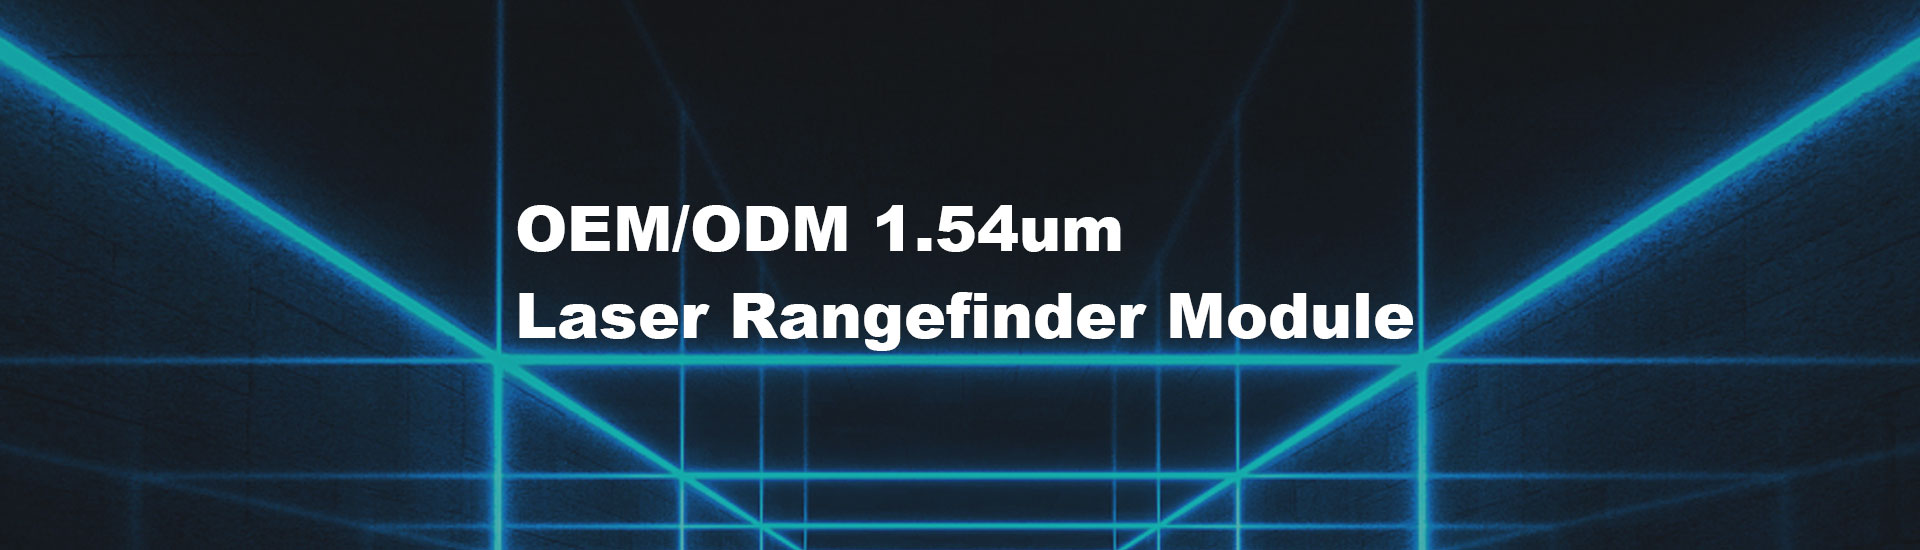 5km  Laser Rangefinder Module